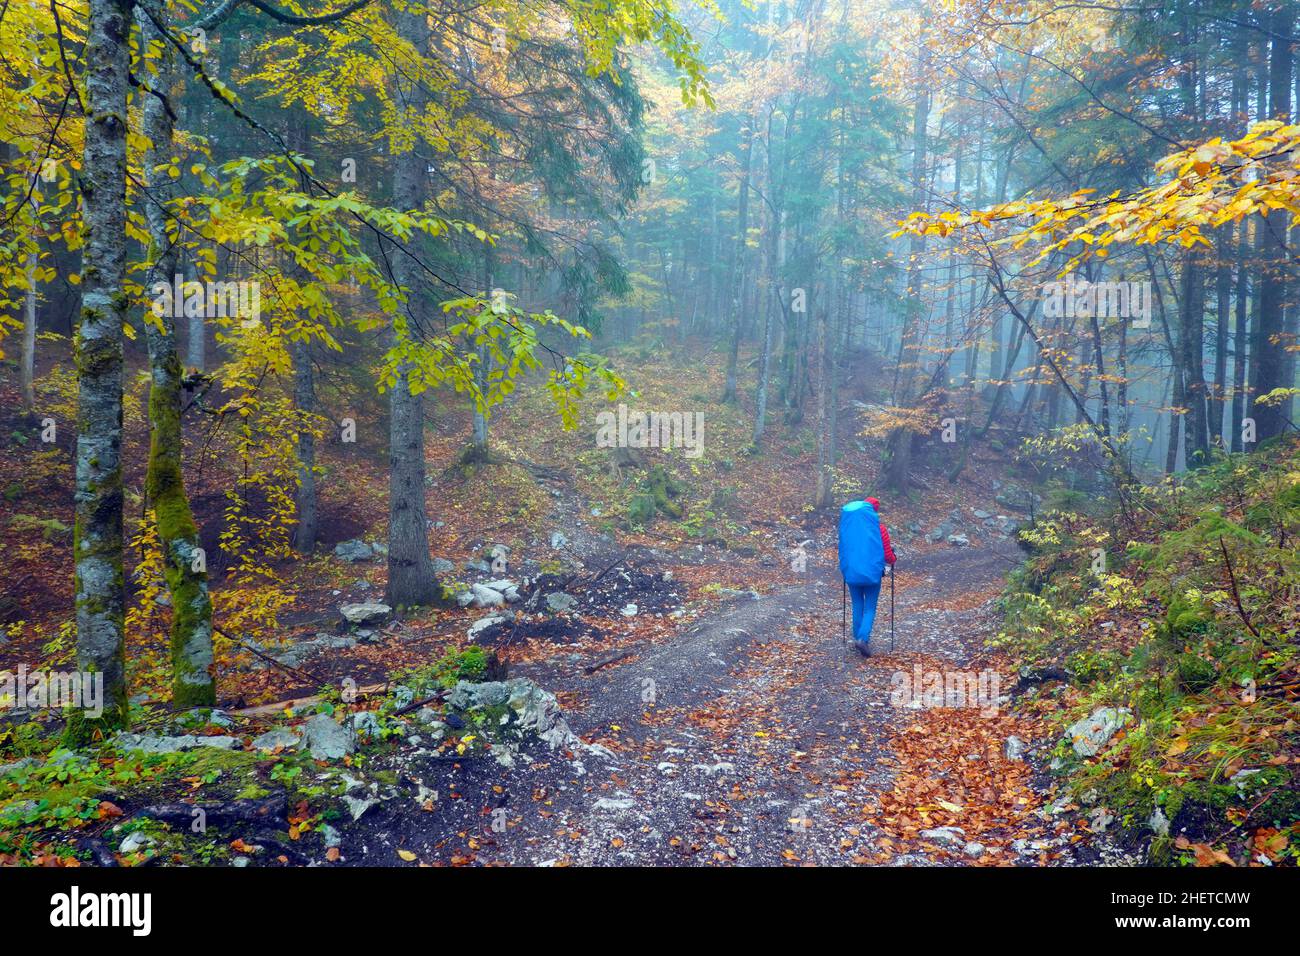 Junge Frau, die auf einem Pfad in einem Nebelwald des Triglav Nationalparks, Slowenisch, Europa, unterwegs ist Stockfoto